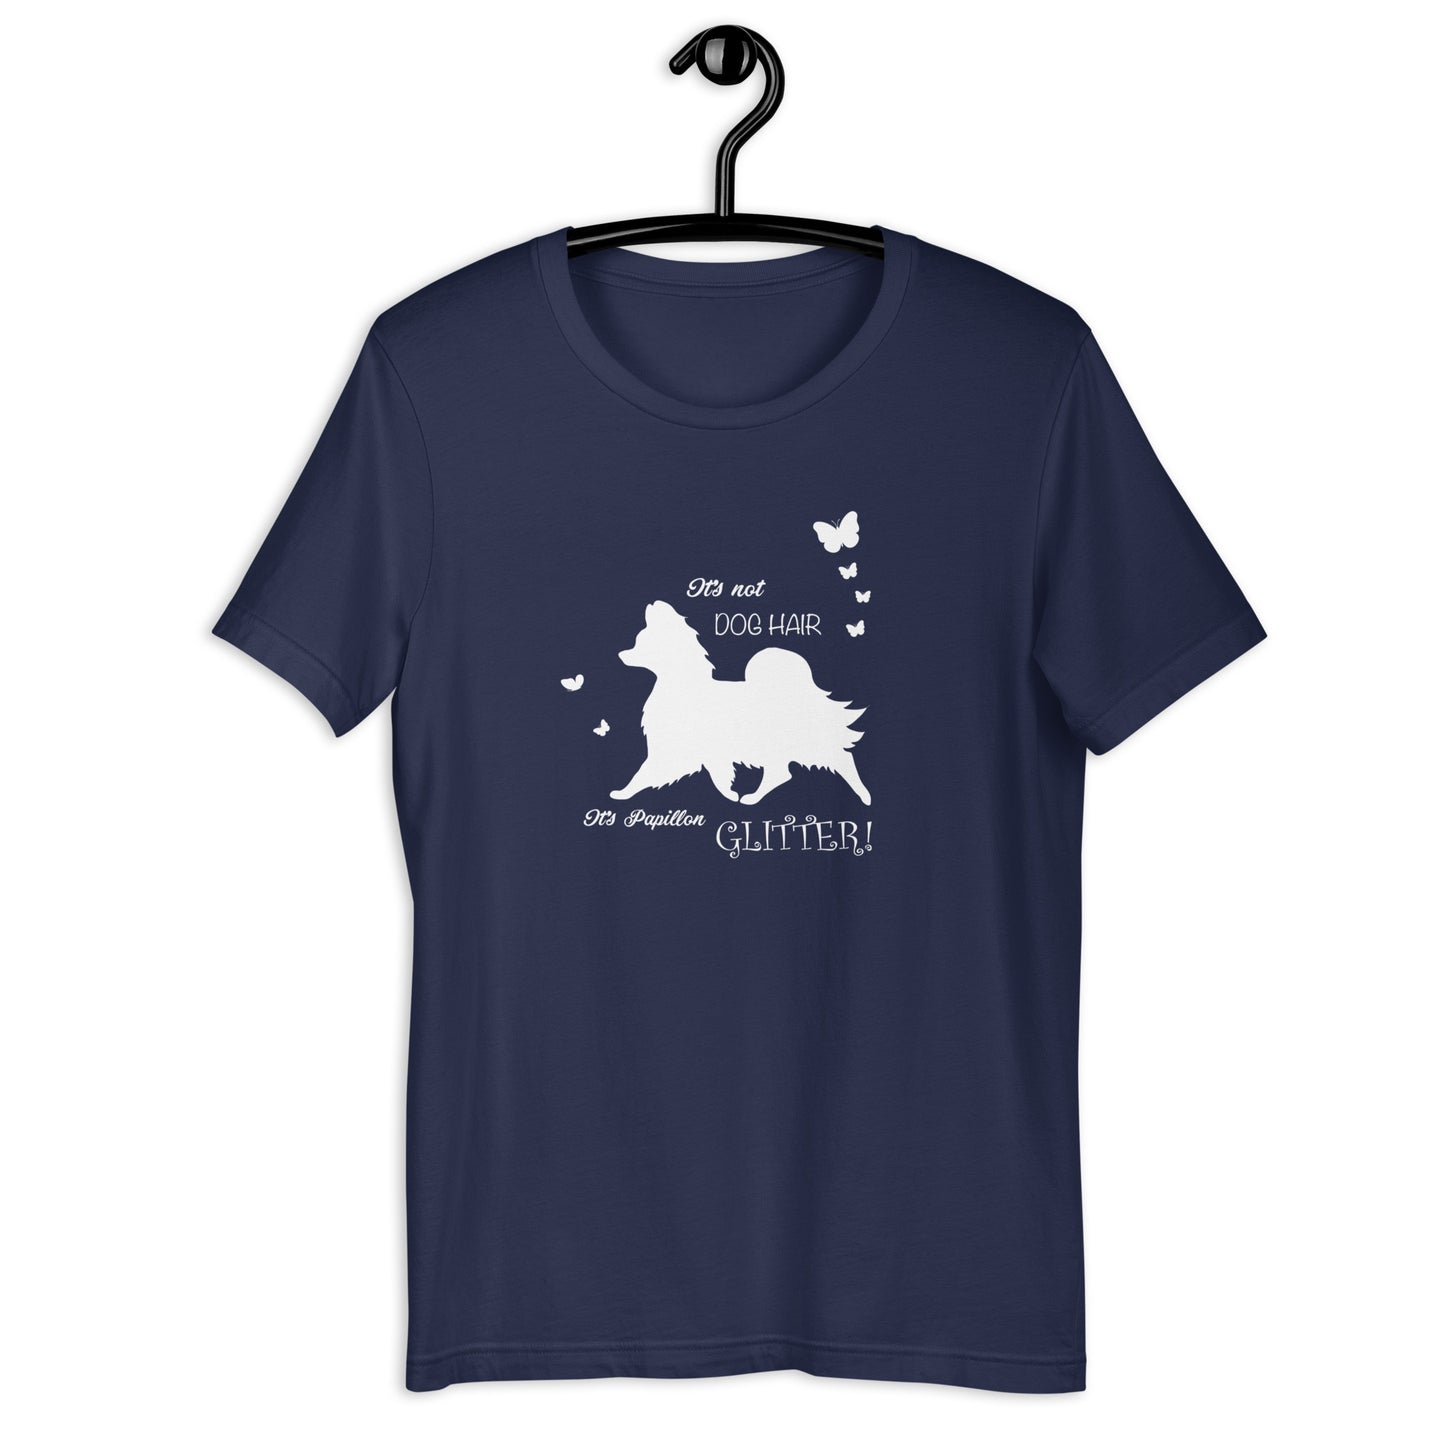 PAPILLON GLITTER - Unisex t-shirt